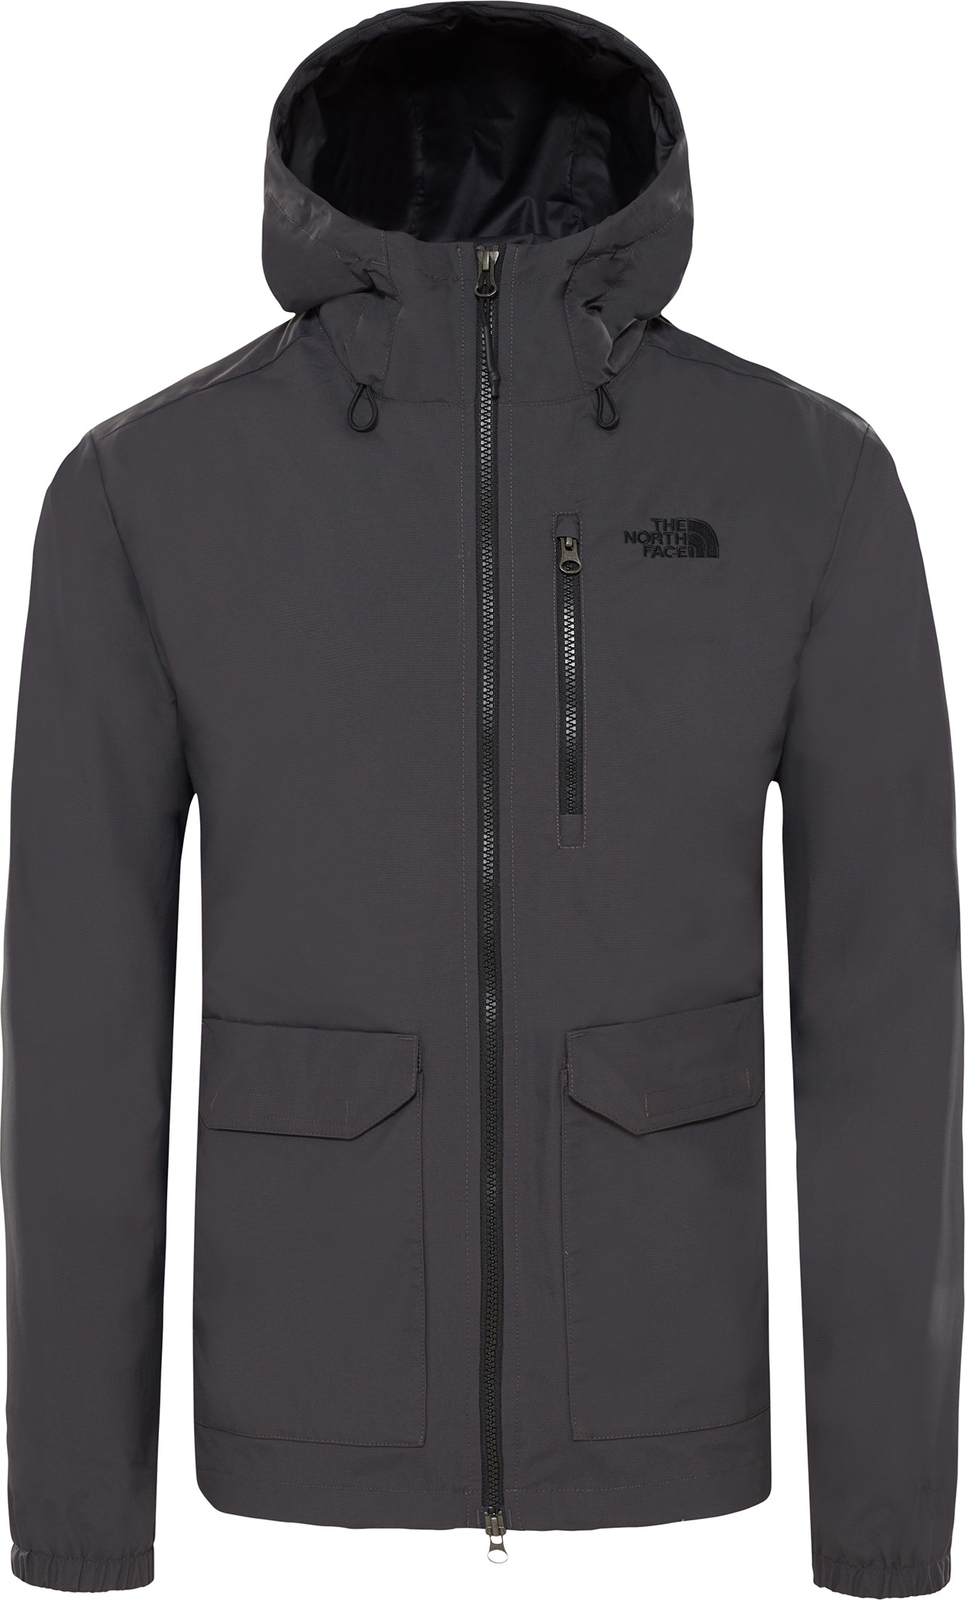 Куртка мужская The North Face Wind Jkt 2, цвет: темно-серый. T93T260C5. Размер S (44/46)